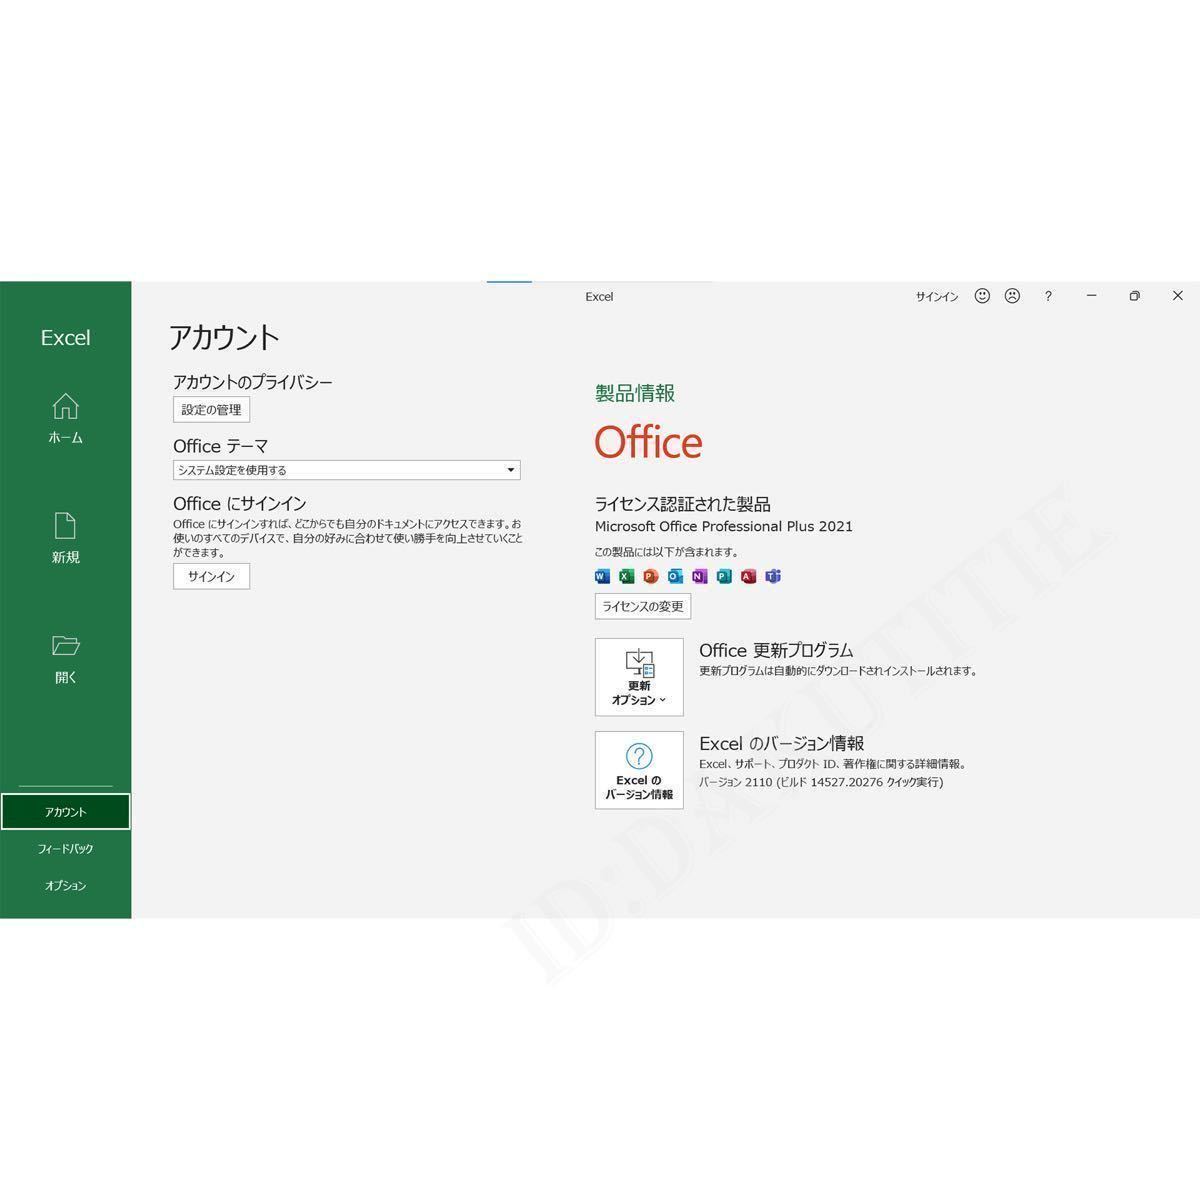 2 шт Microsoft Office 2021 Professional Plus офис 2021 Pro канал ключ стандартный Word Excel выпуск на японском языке инструкция есть загрузка версия 5